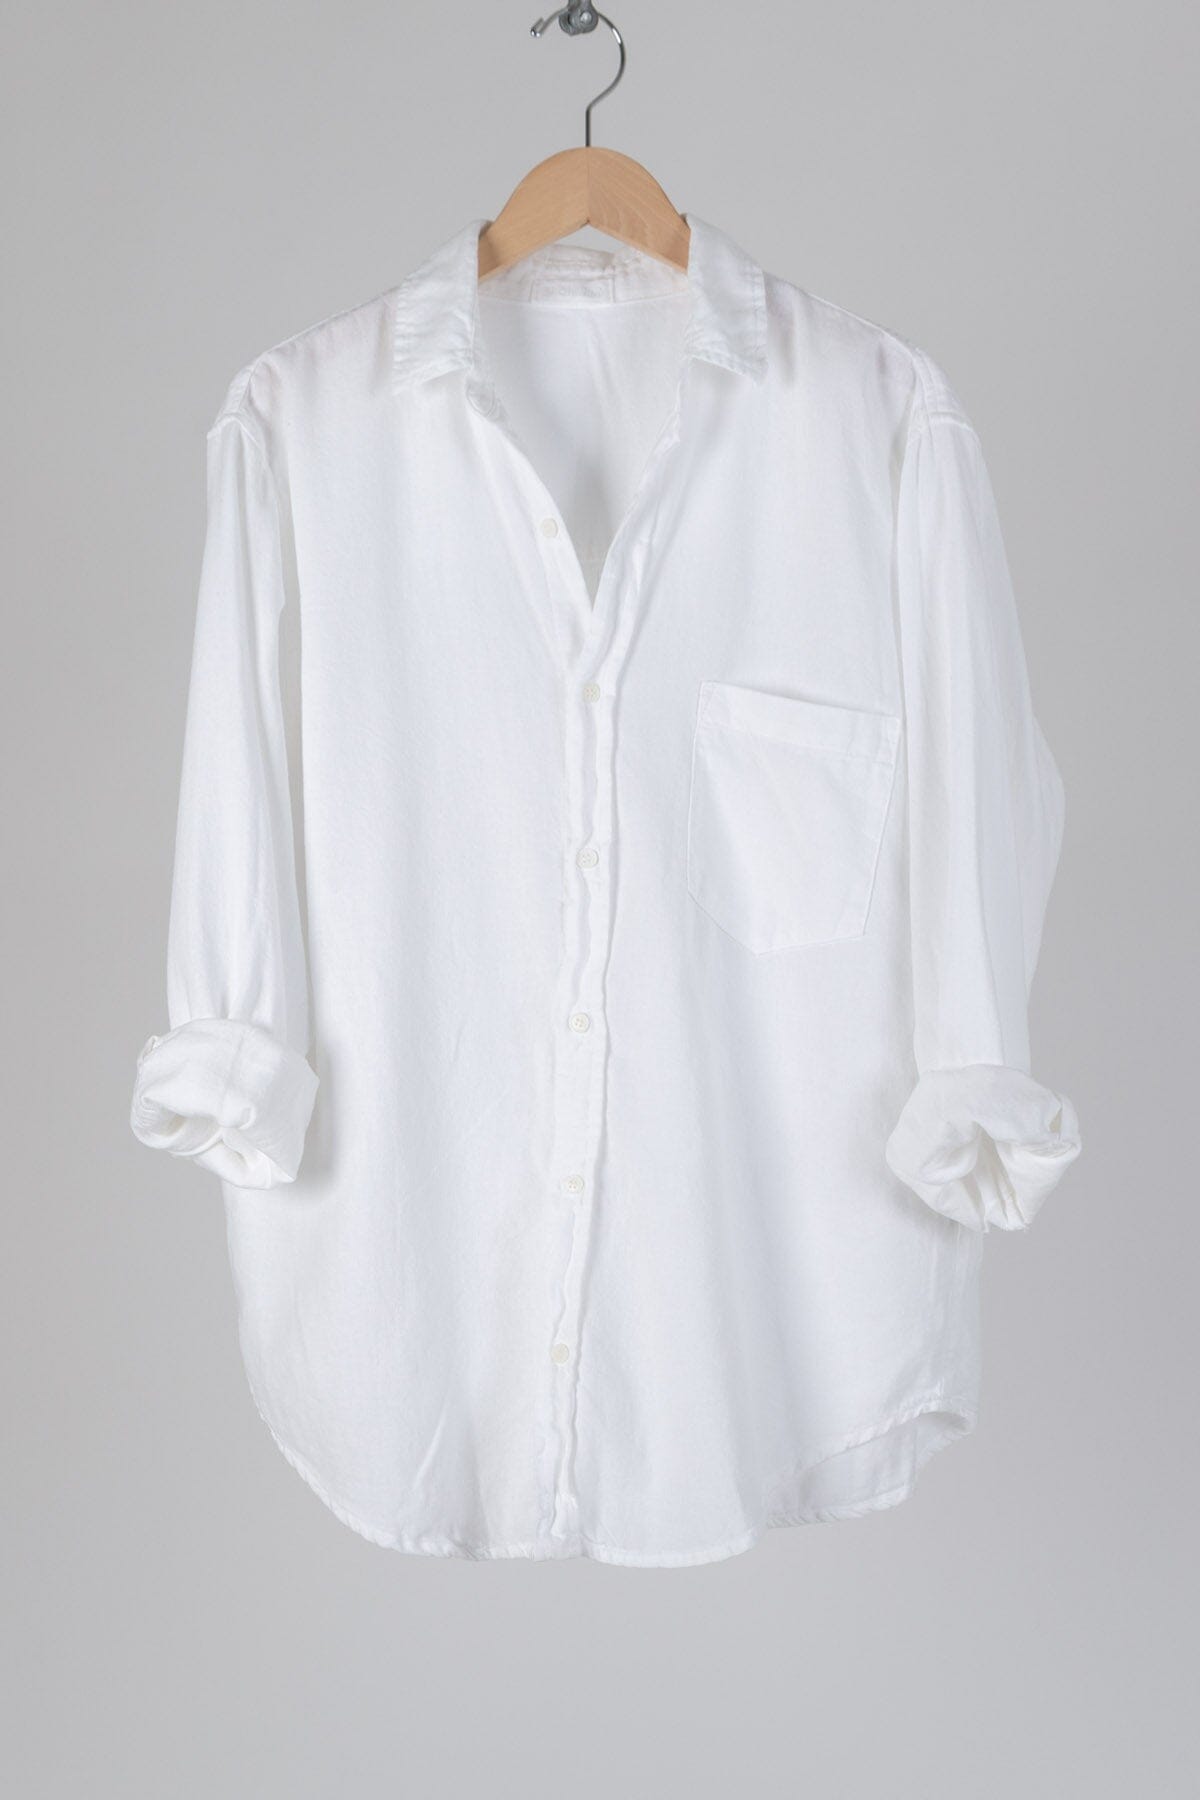 Joss - Textured Cotton S90 - 4269 Sale CP Shades white 4269